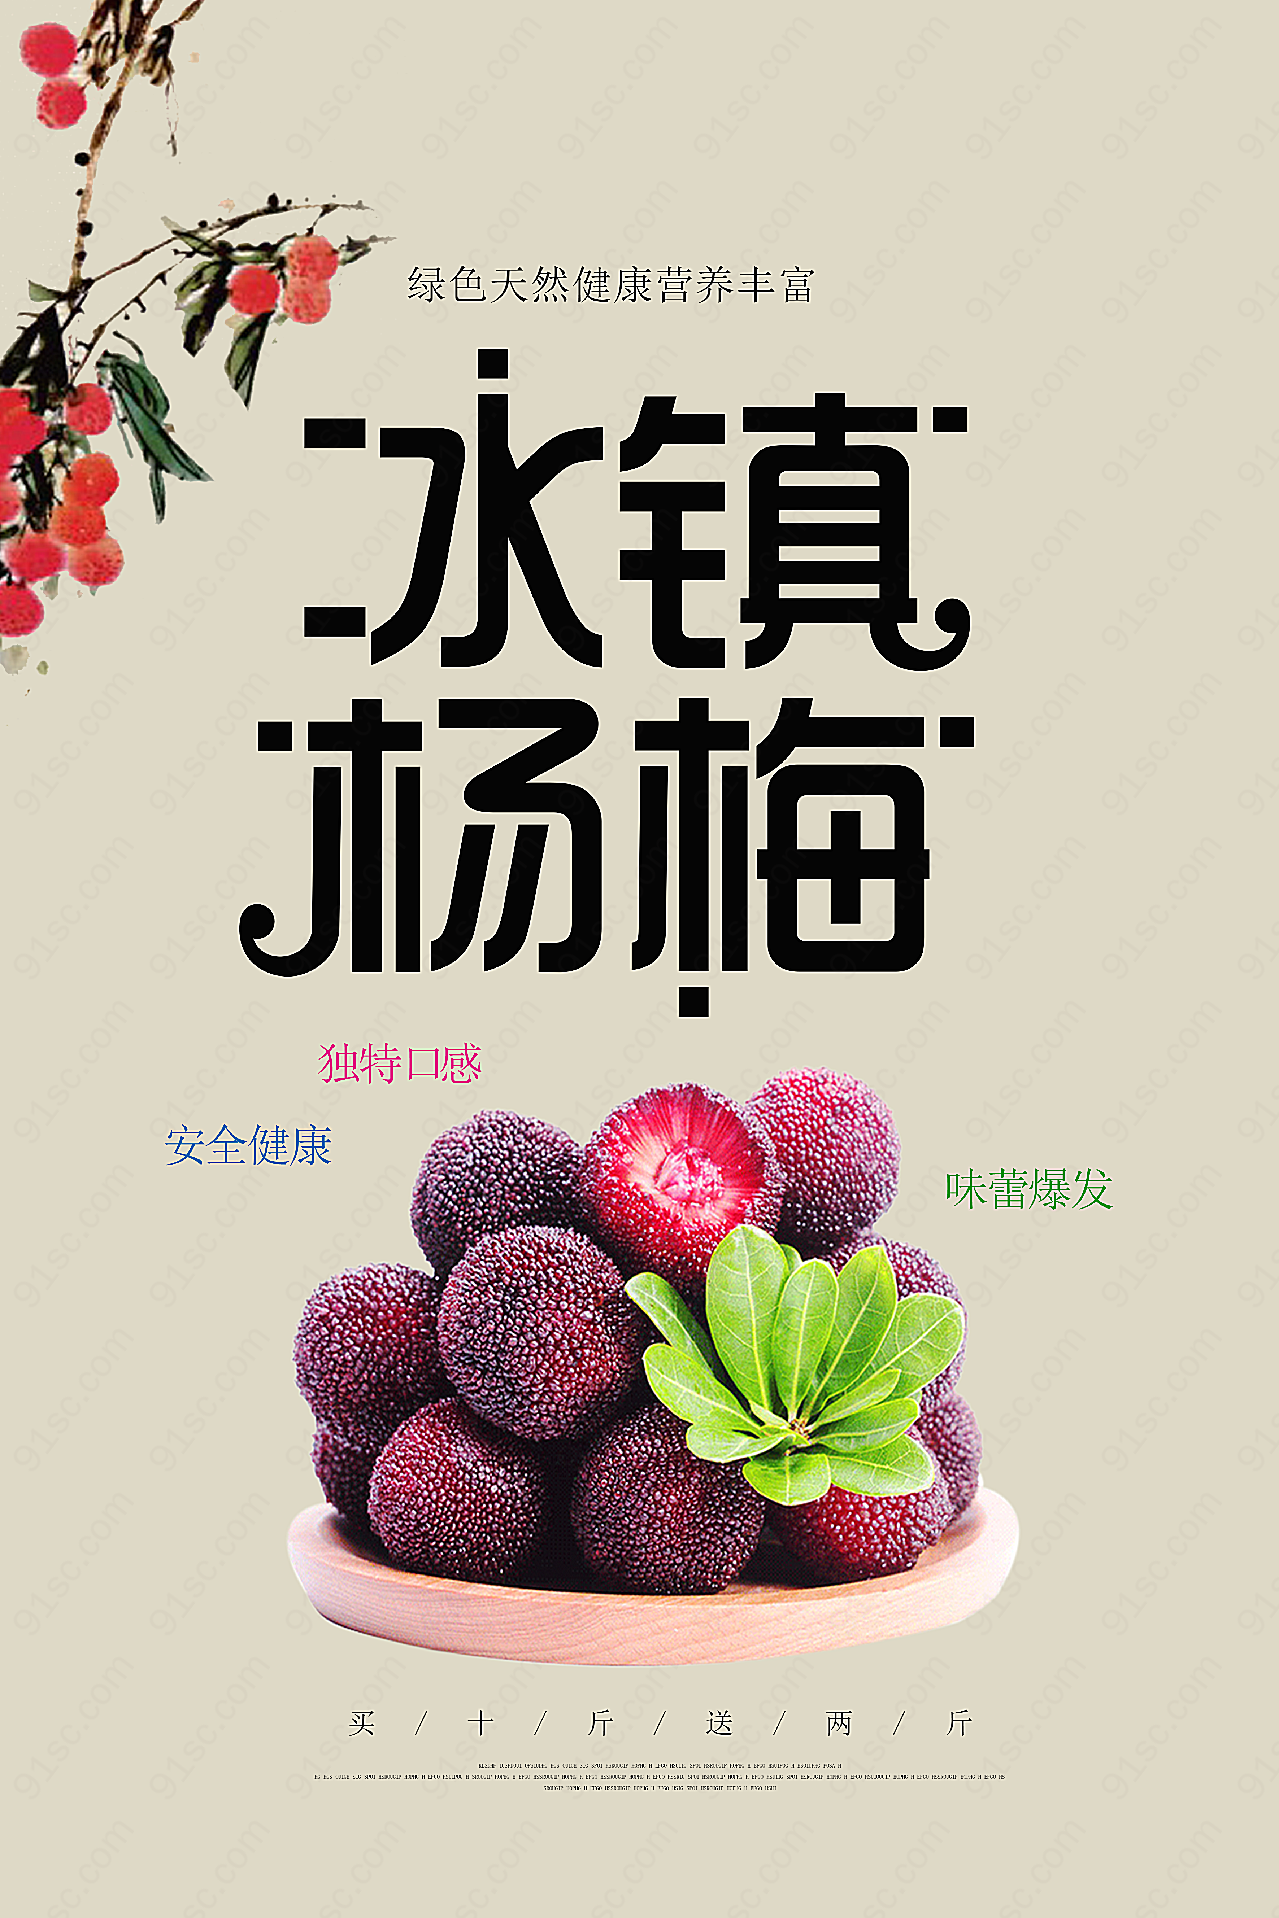 冰镇杨梅宣传海报摄影广告